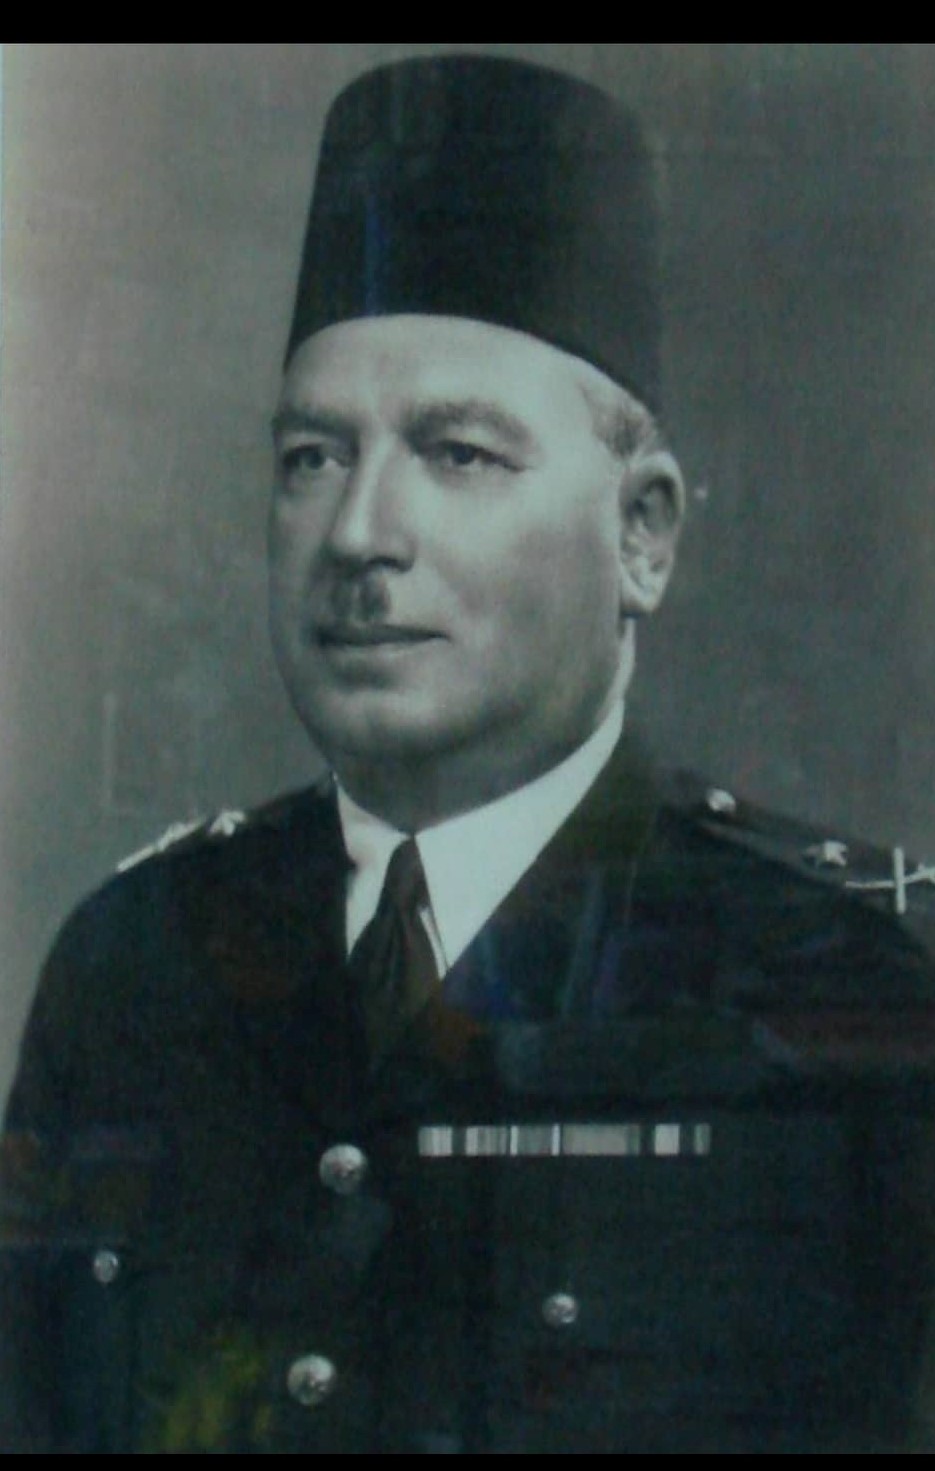 اللواء أحمد رائف قائد قوات الشرطة المصرية فى معركة الإسماعيلية فى 25 يناير 1952